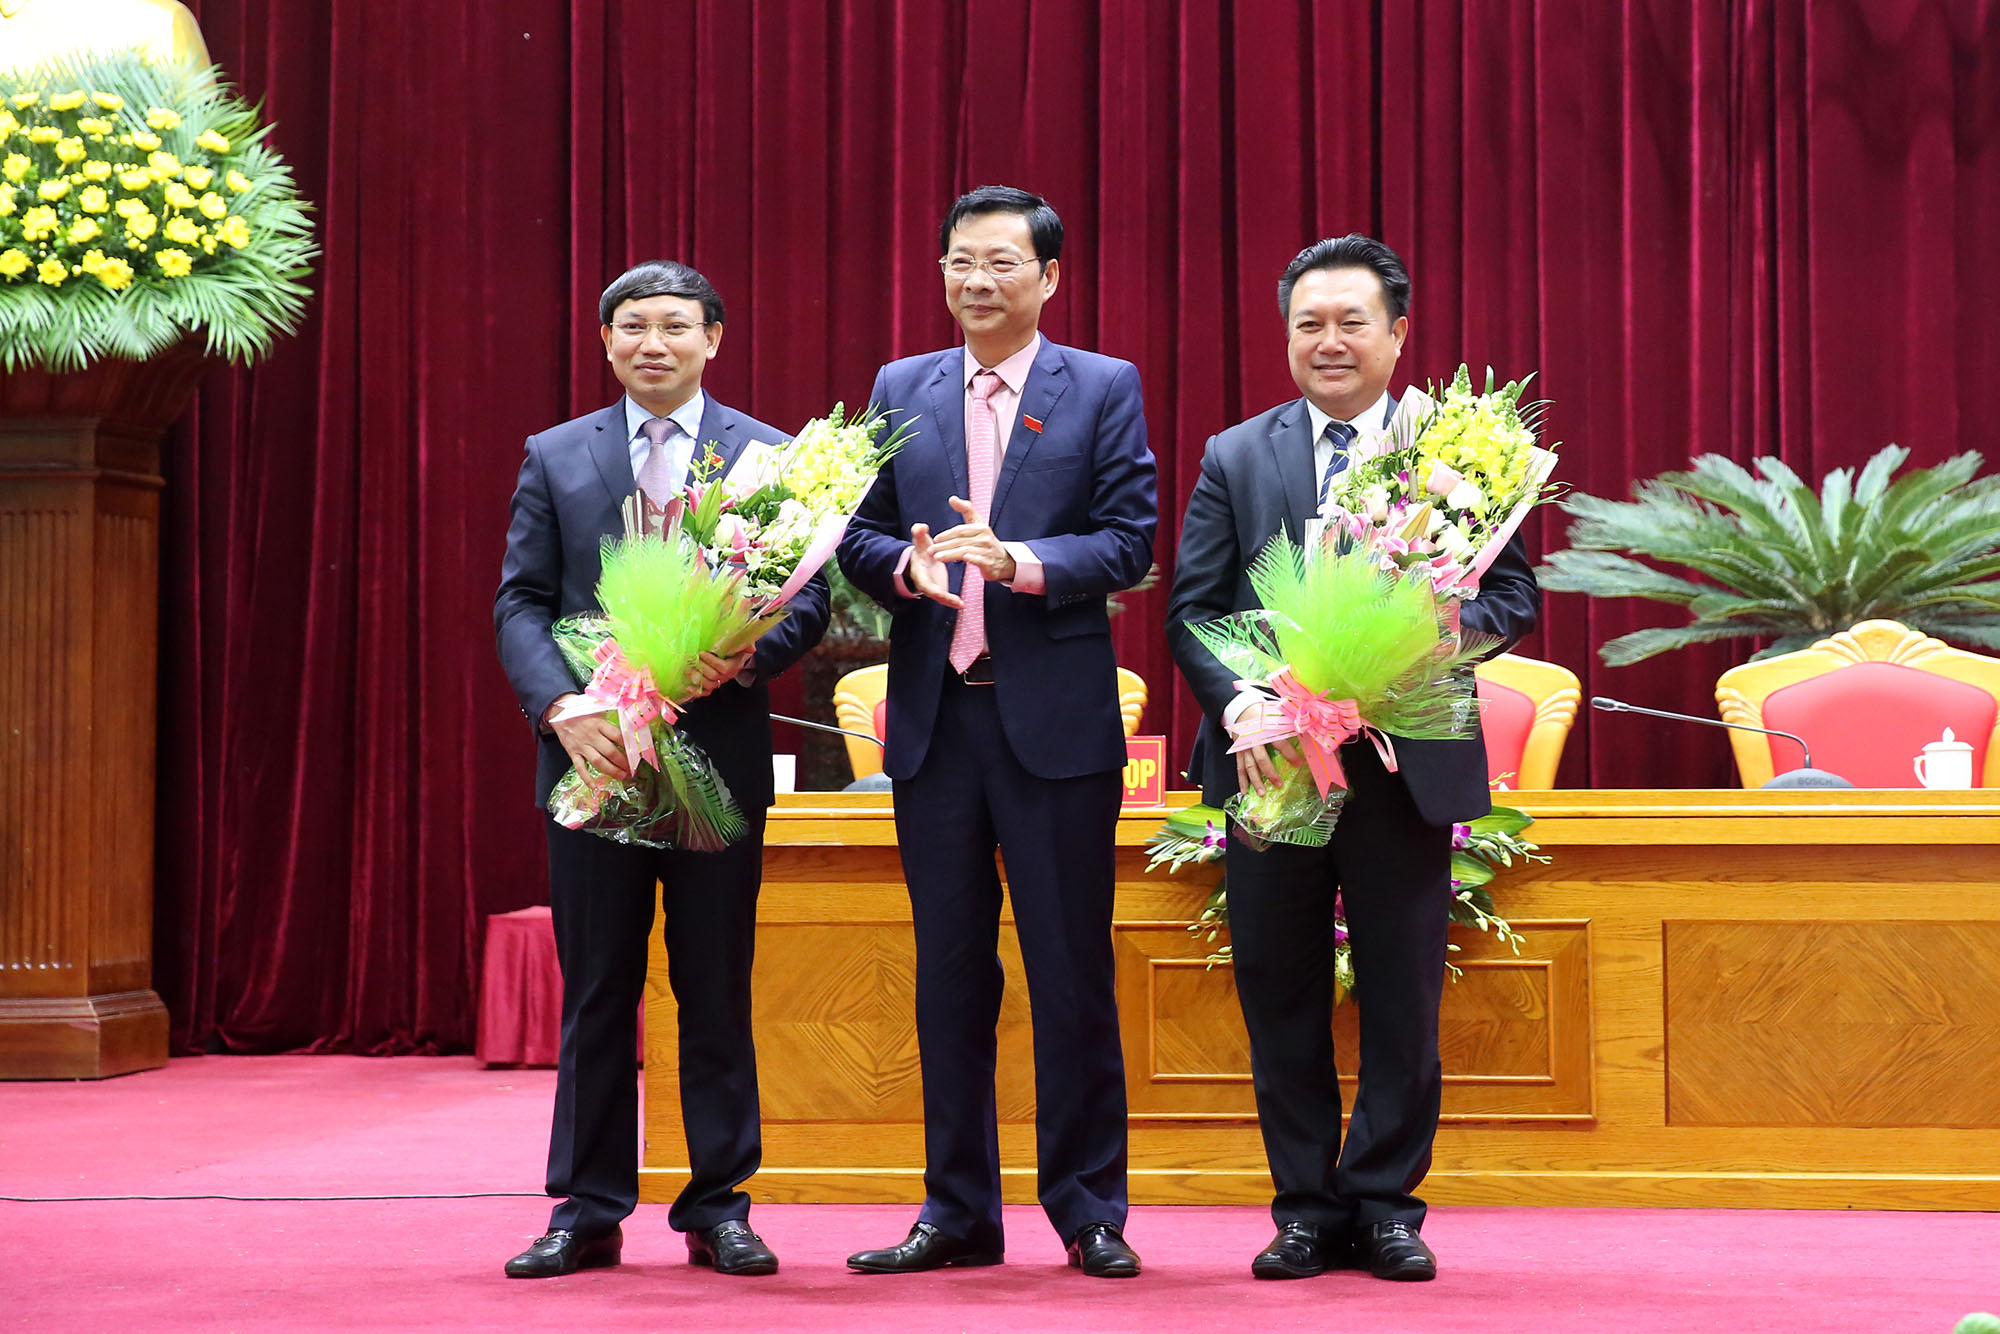 Đồng chí Nguyễn Văn Đọc, Bí thư Tỉnh ủy, Chủ tịch HĐND tỉnh tặng hoa cho đồng chí Nguyễn Xuân Ký và đồng chí Nguyễn Đức Thành đã hoàn thành nhiệm vụ.